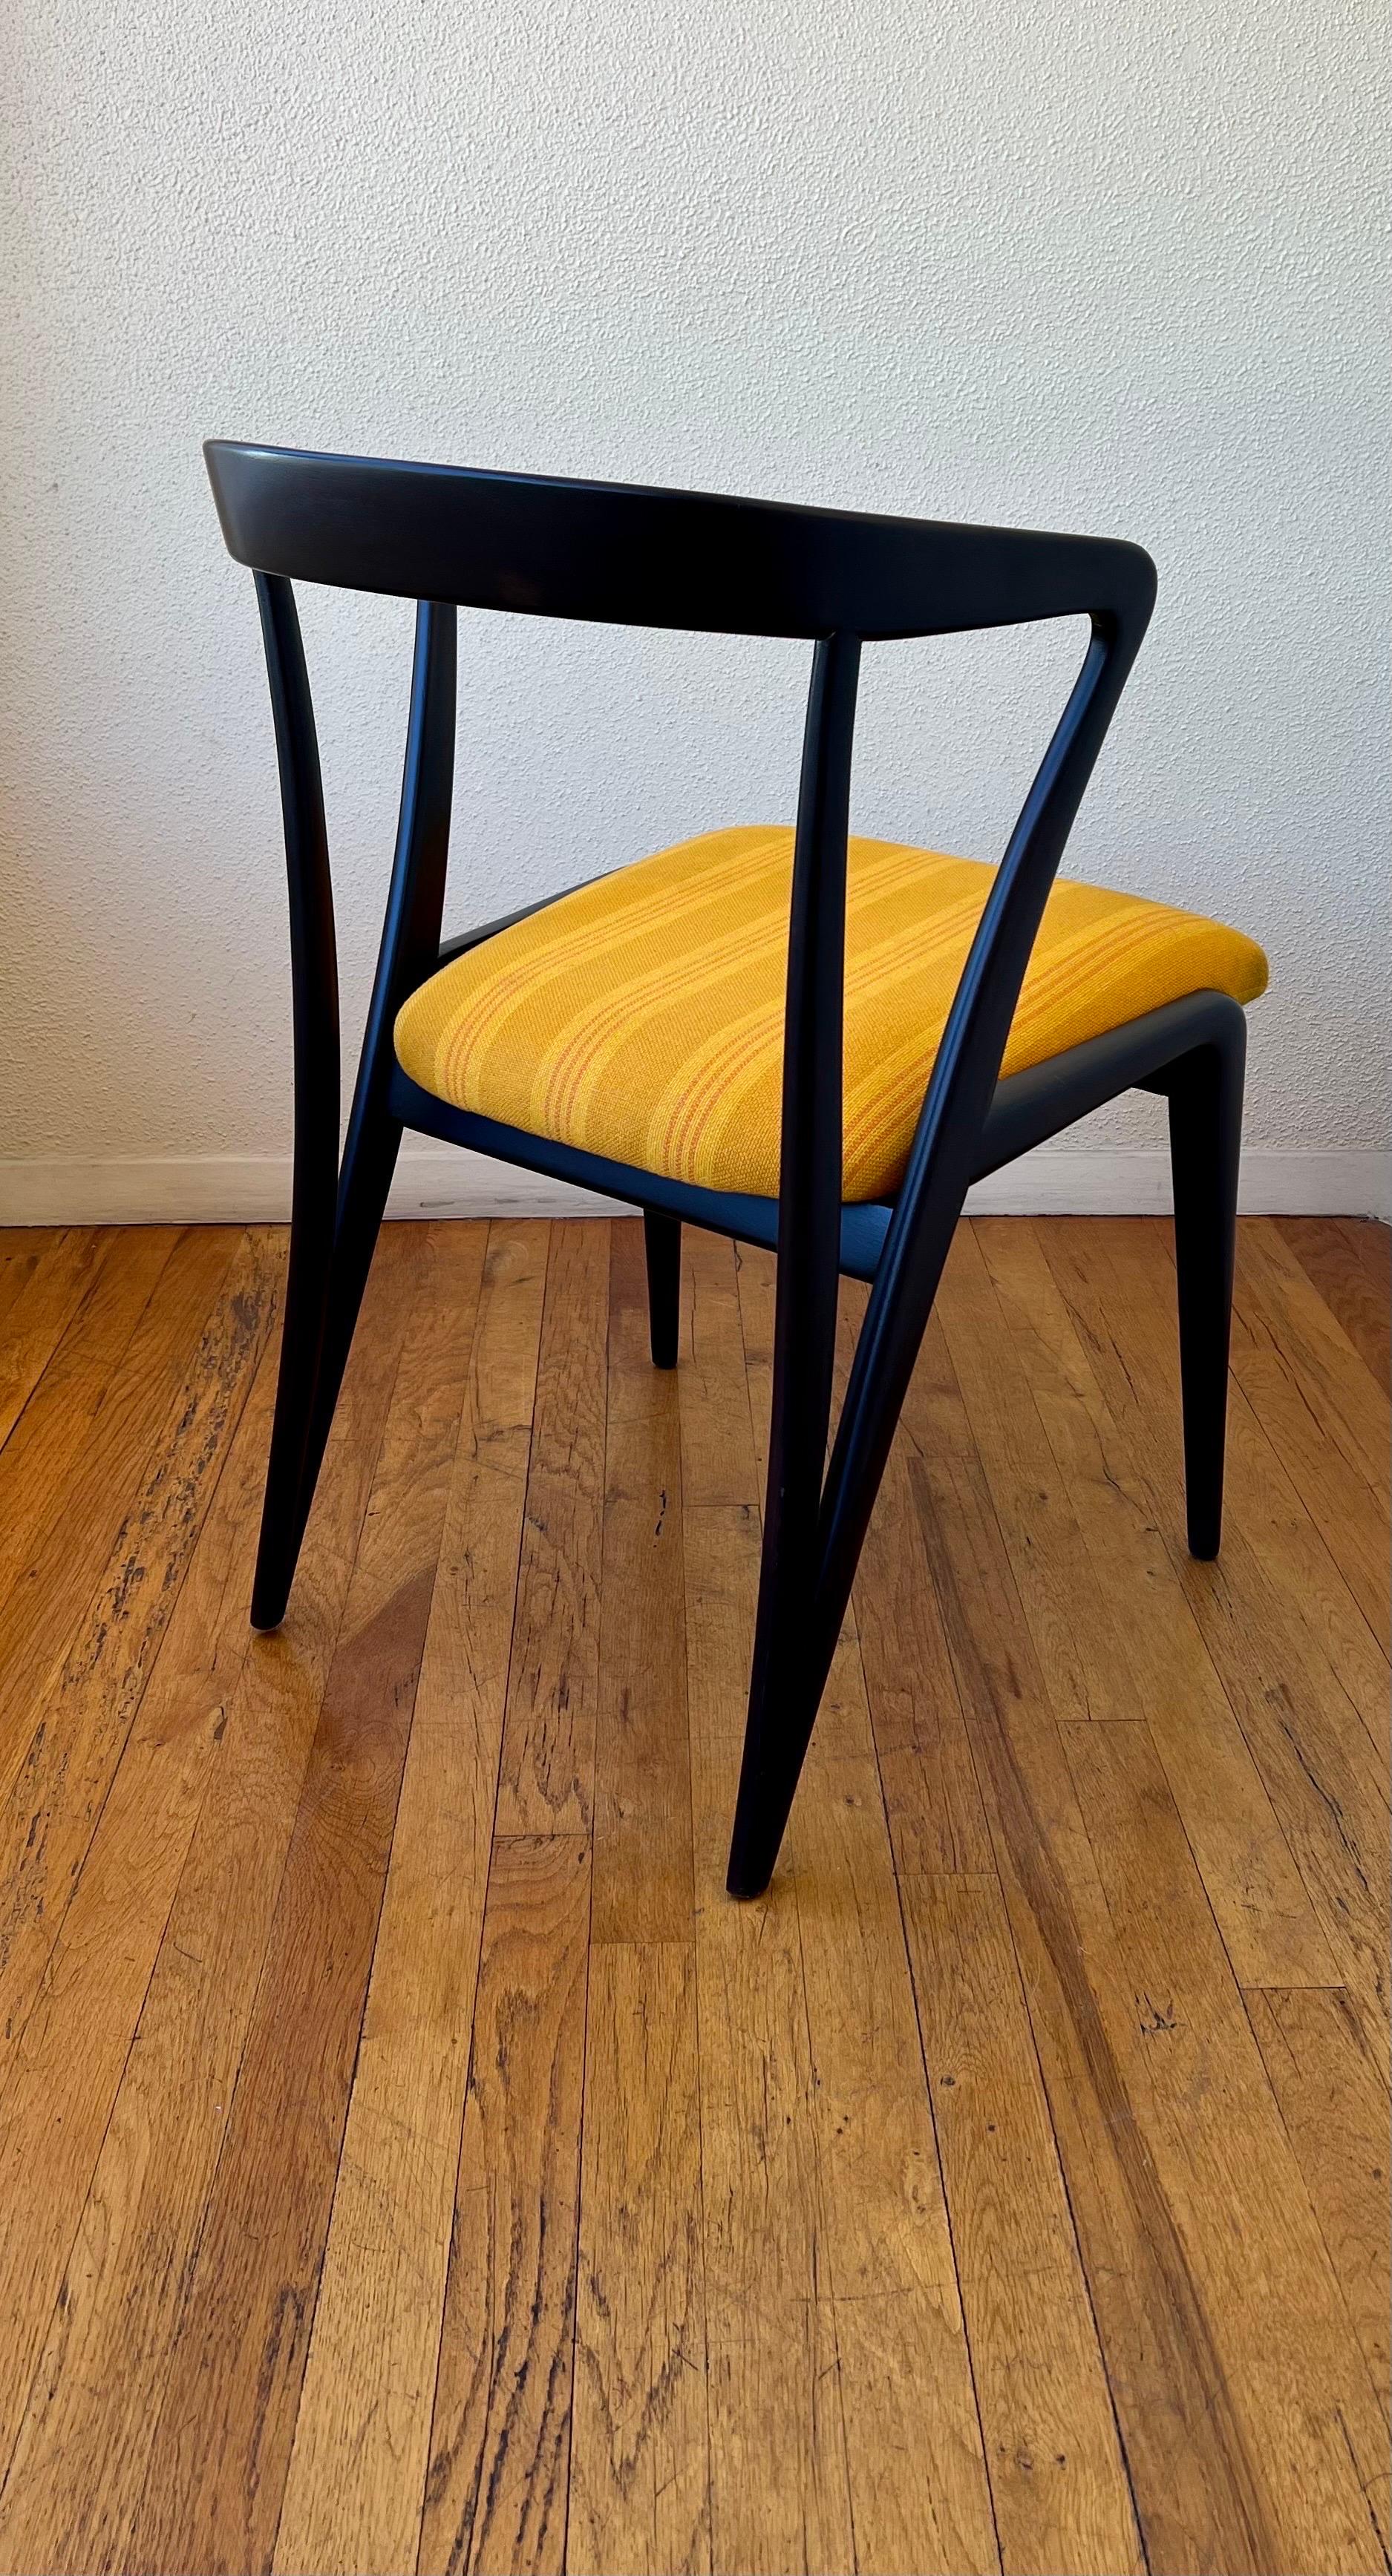 Magnifique et élégante chaise simple conçue par Bertha Schaefer pour Singer & Sons, fraîchement laquée en finition anthracite, récupérée en tissu danois.